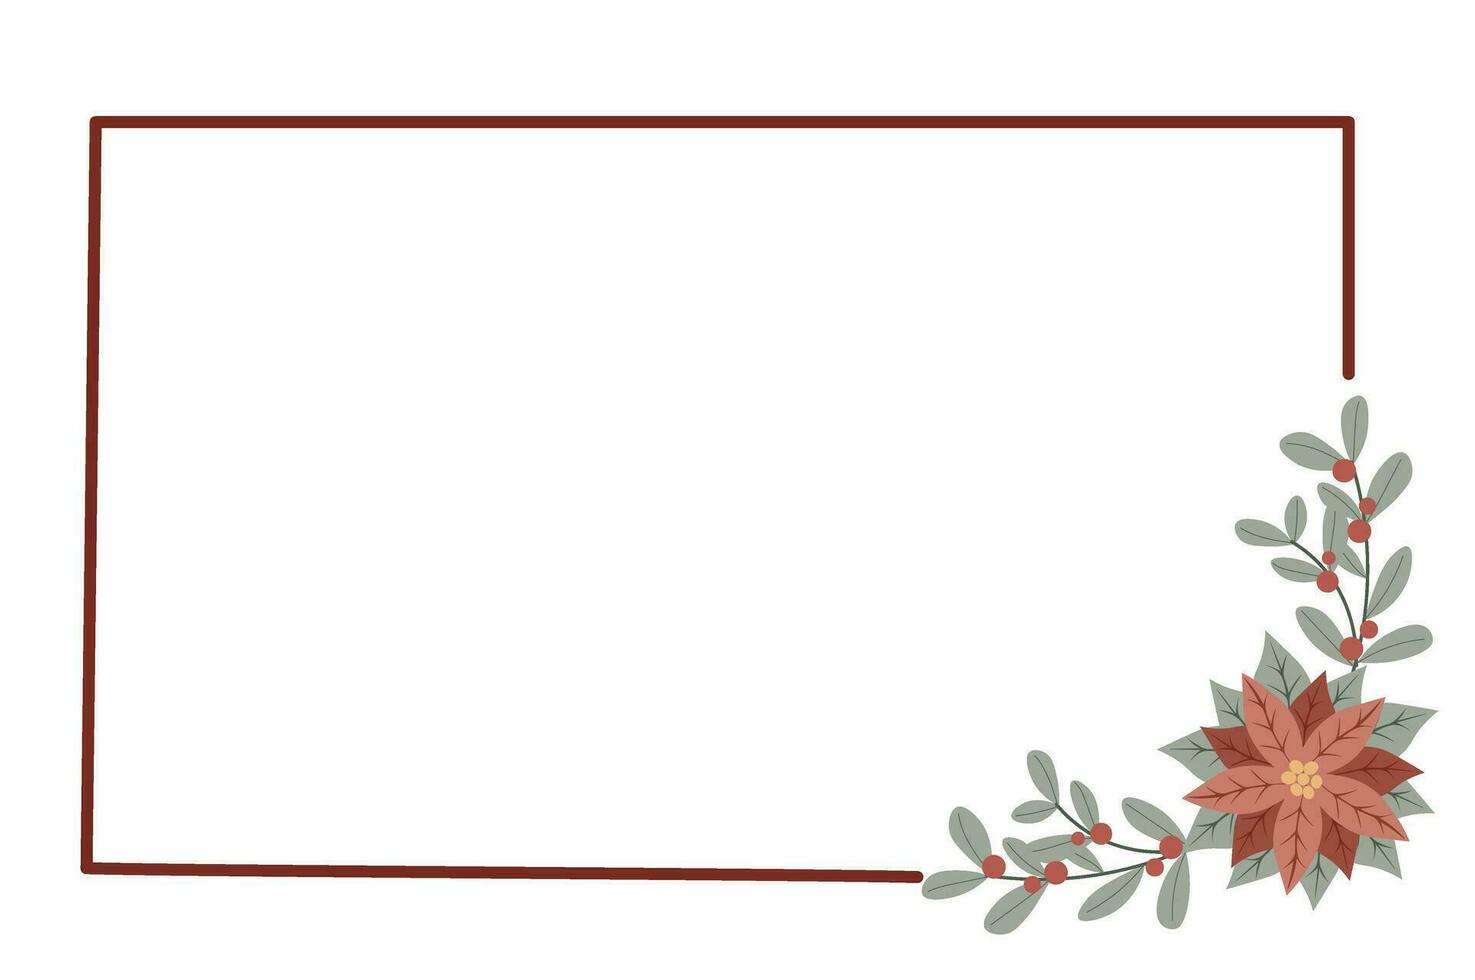 Noël Cadre avec rouge poinsettia fleur.design pour Nouveau année et Noël cartes, scrapbooking, autocollants, planificateur, invitations vecteur